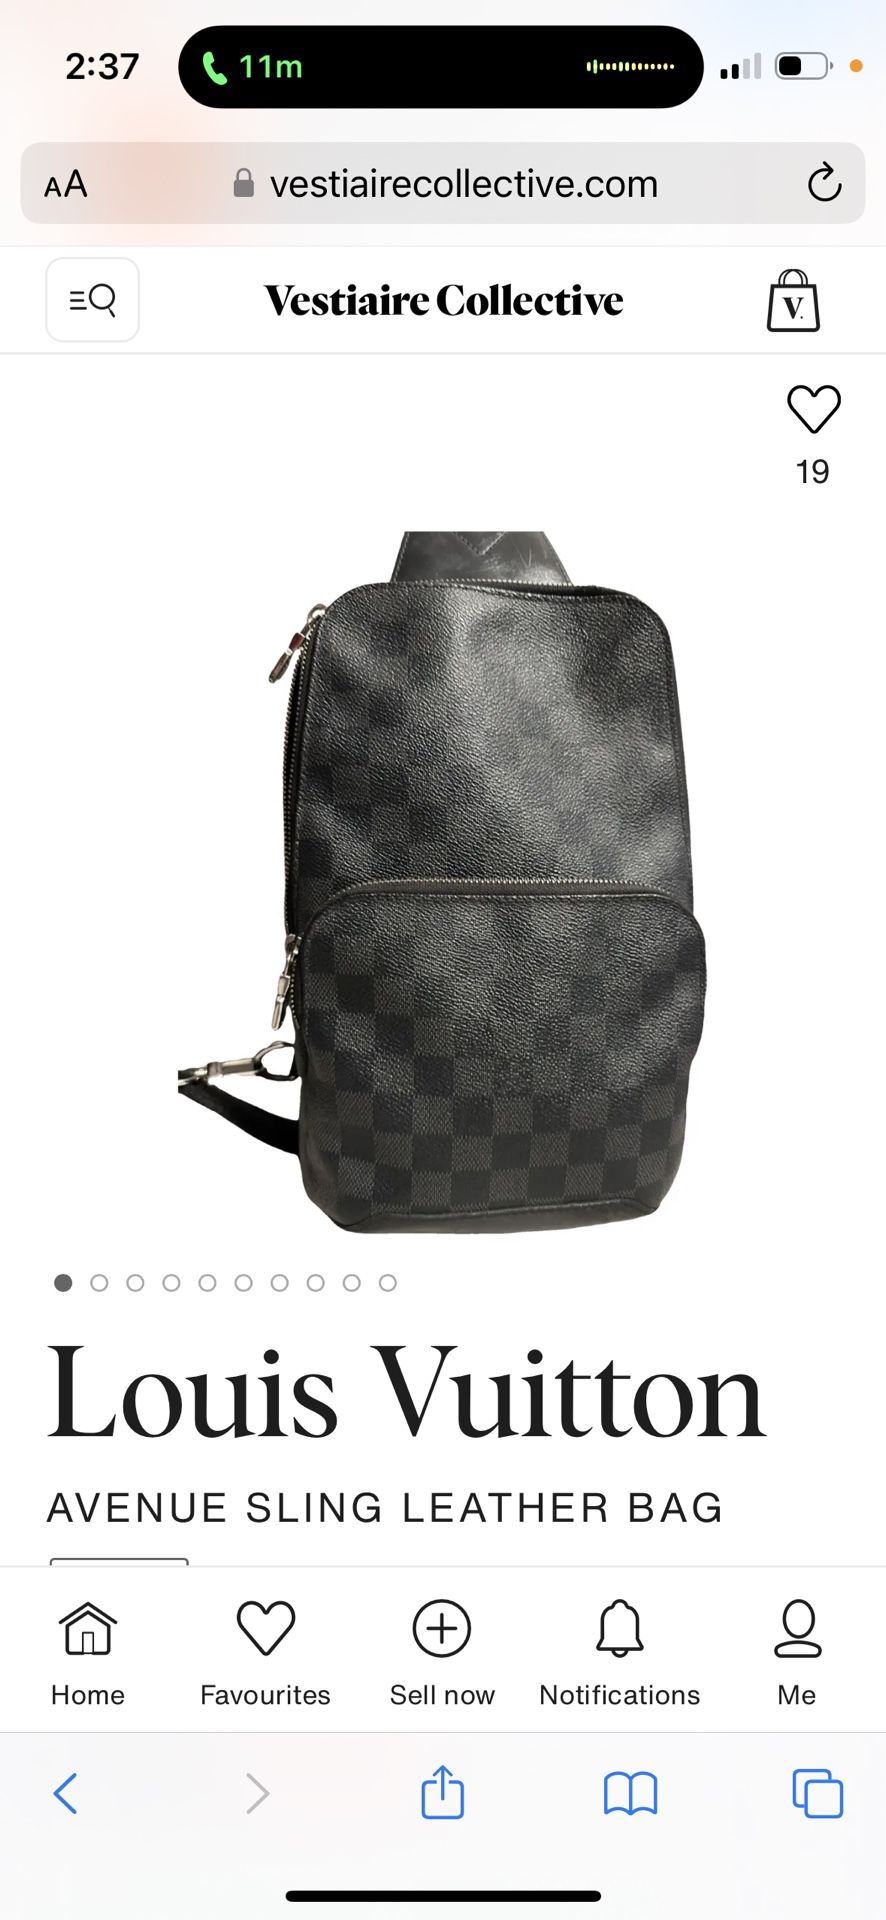 Authentic Louis Vuitton Avenue Sling Leather Bag